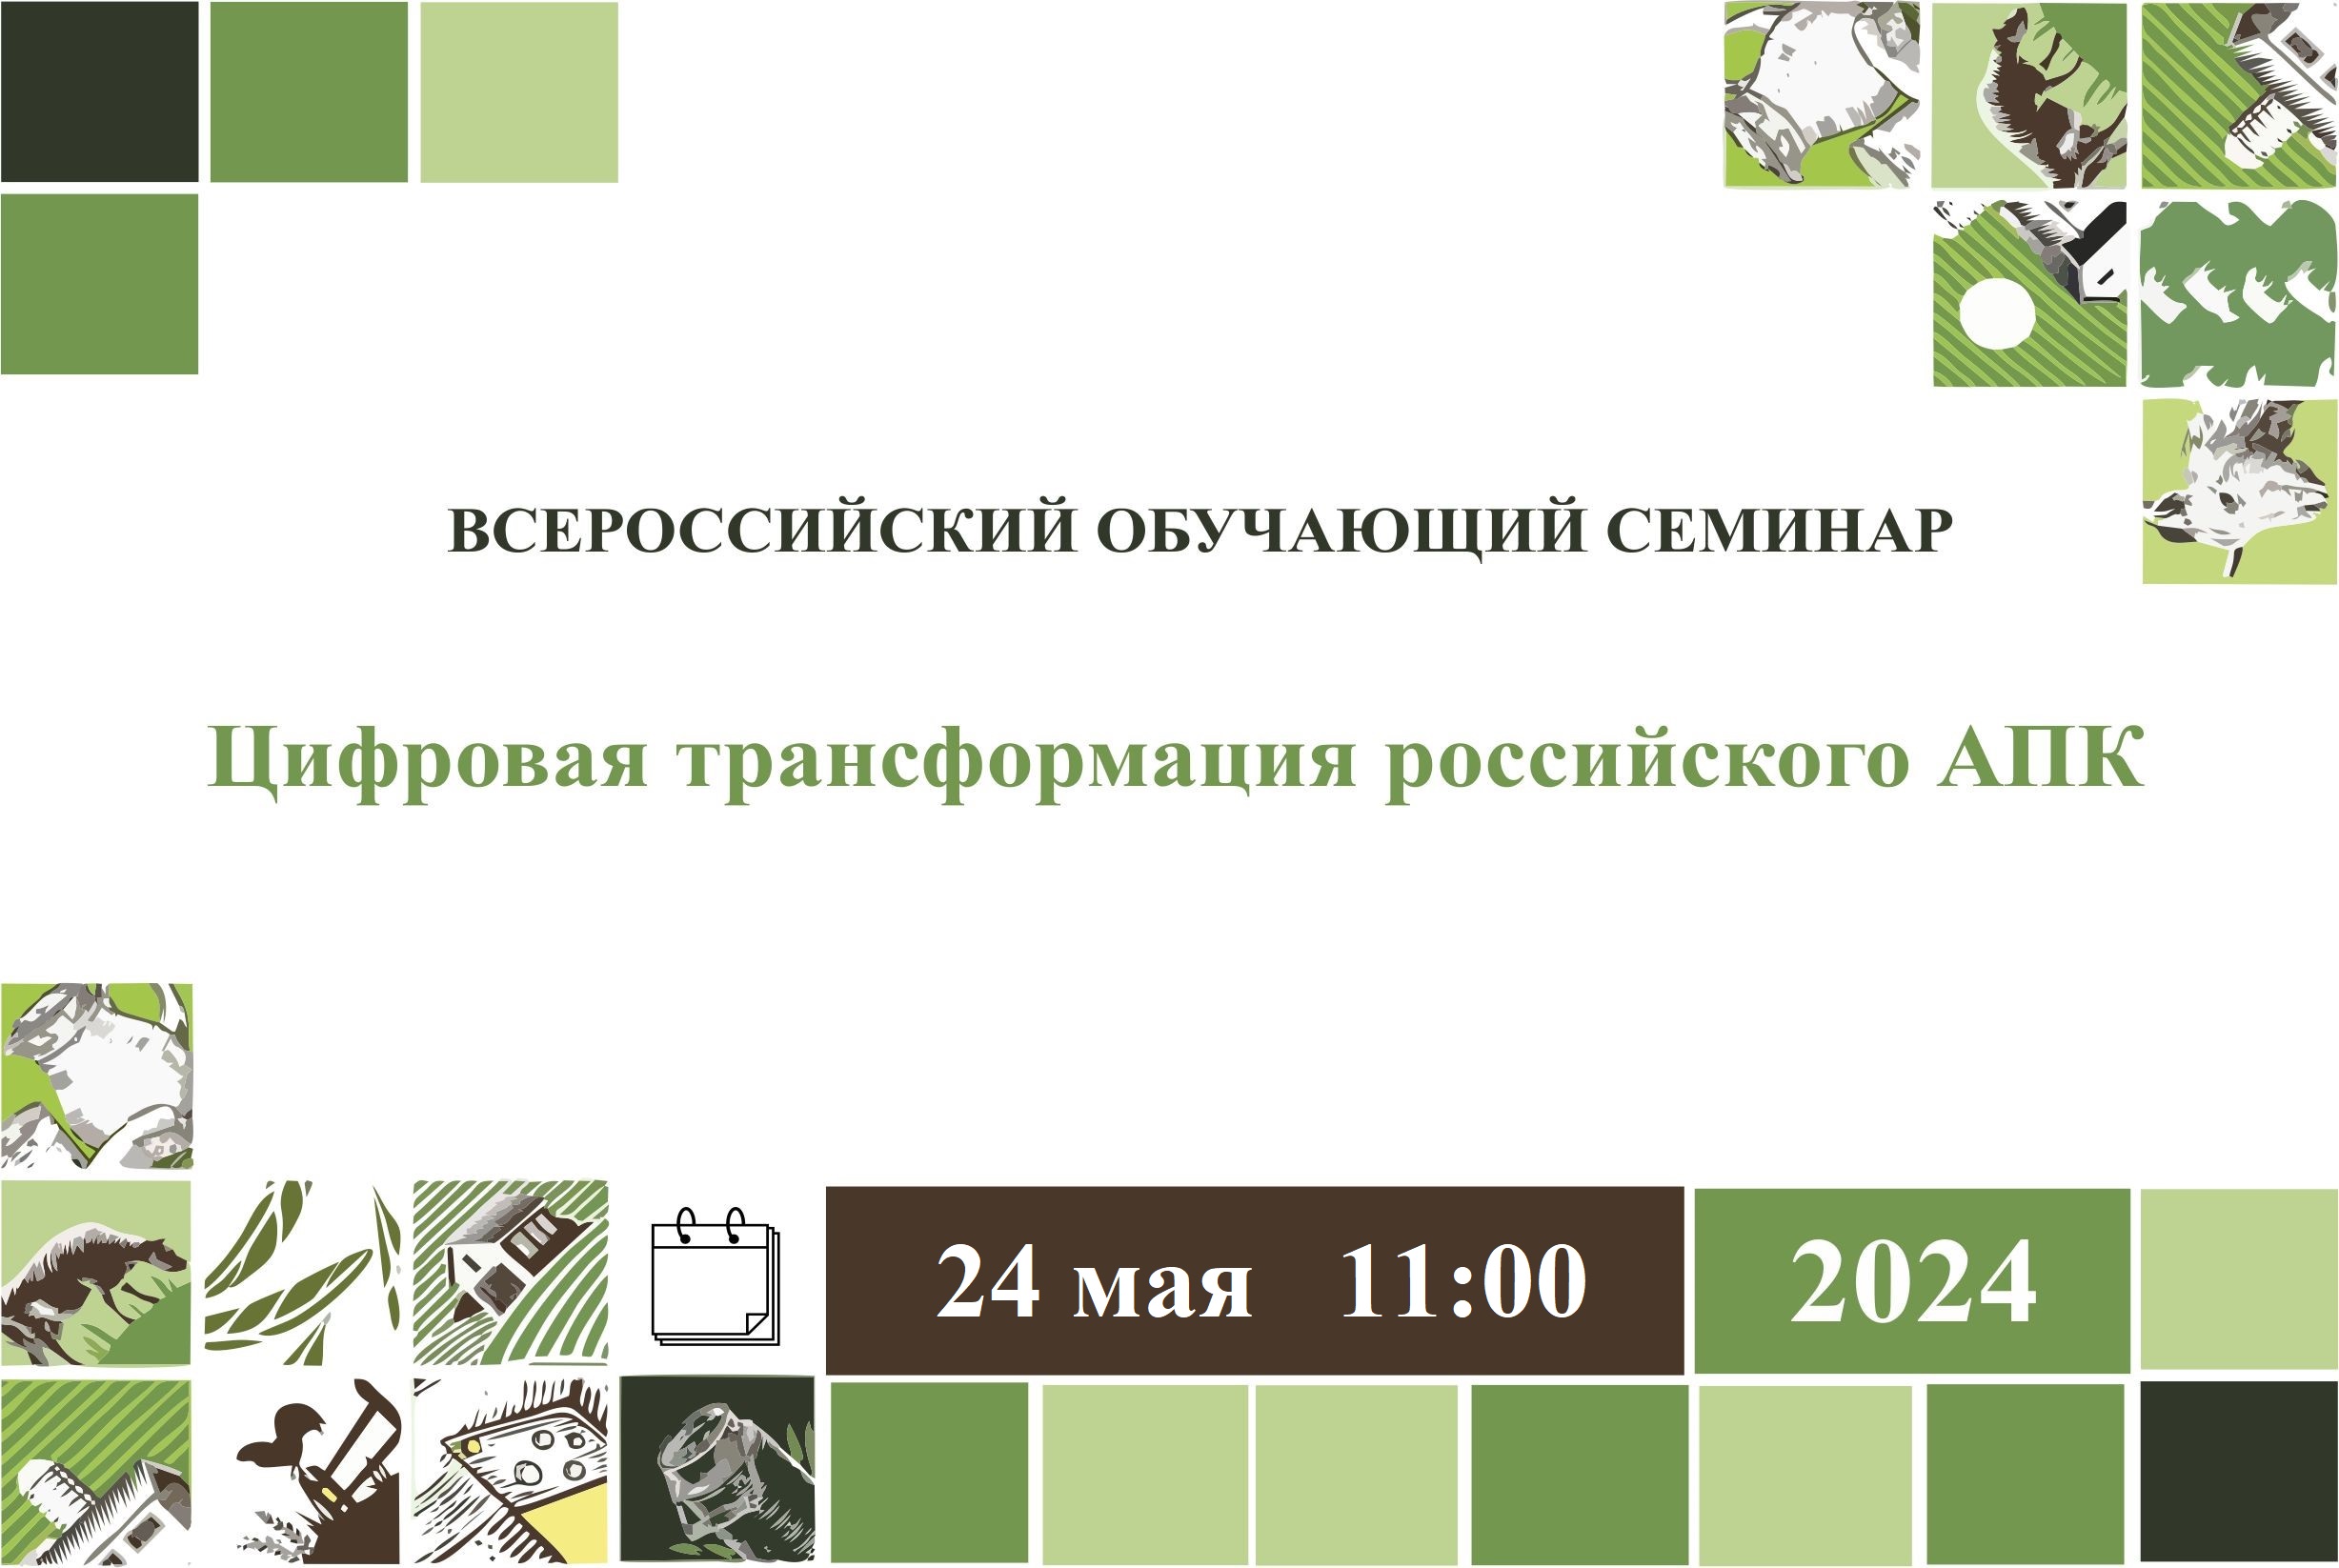 24 мая в 11:00 состоится всероссийский обучающий семинар